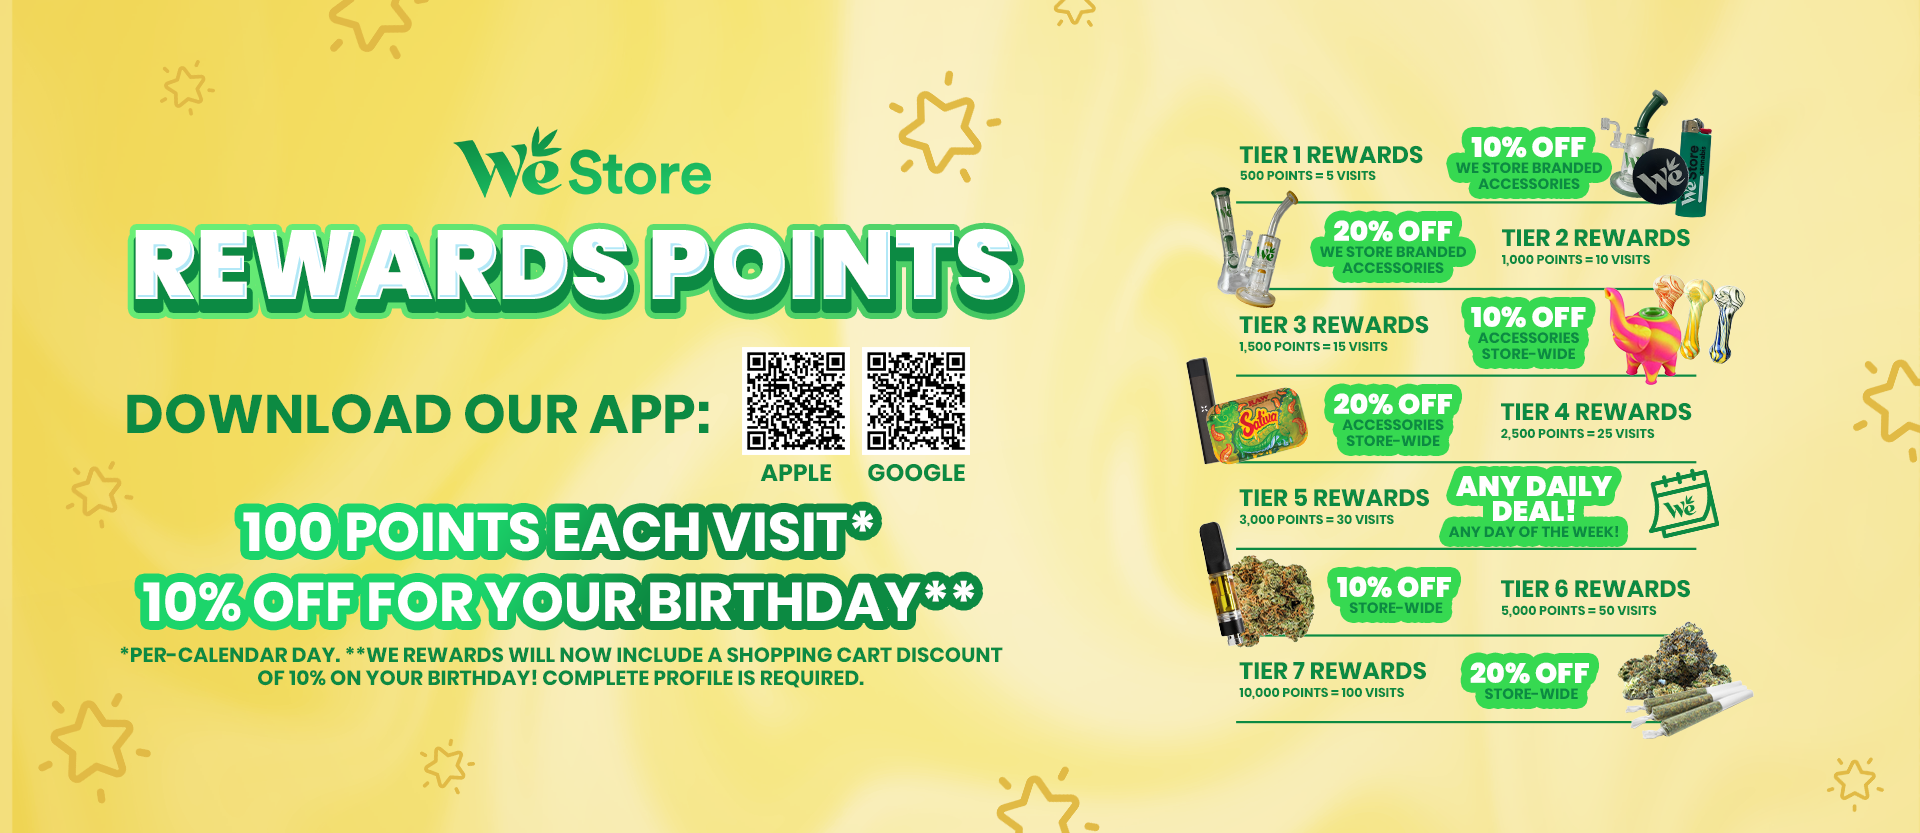 WeStore Rewards Points